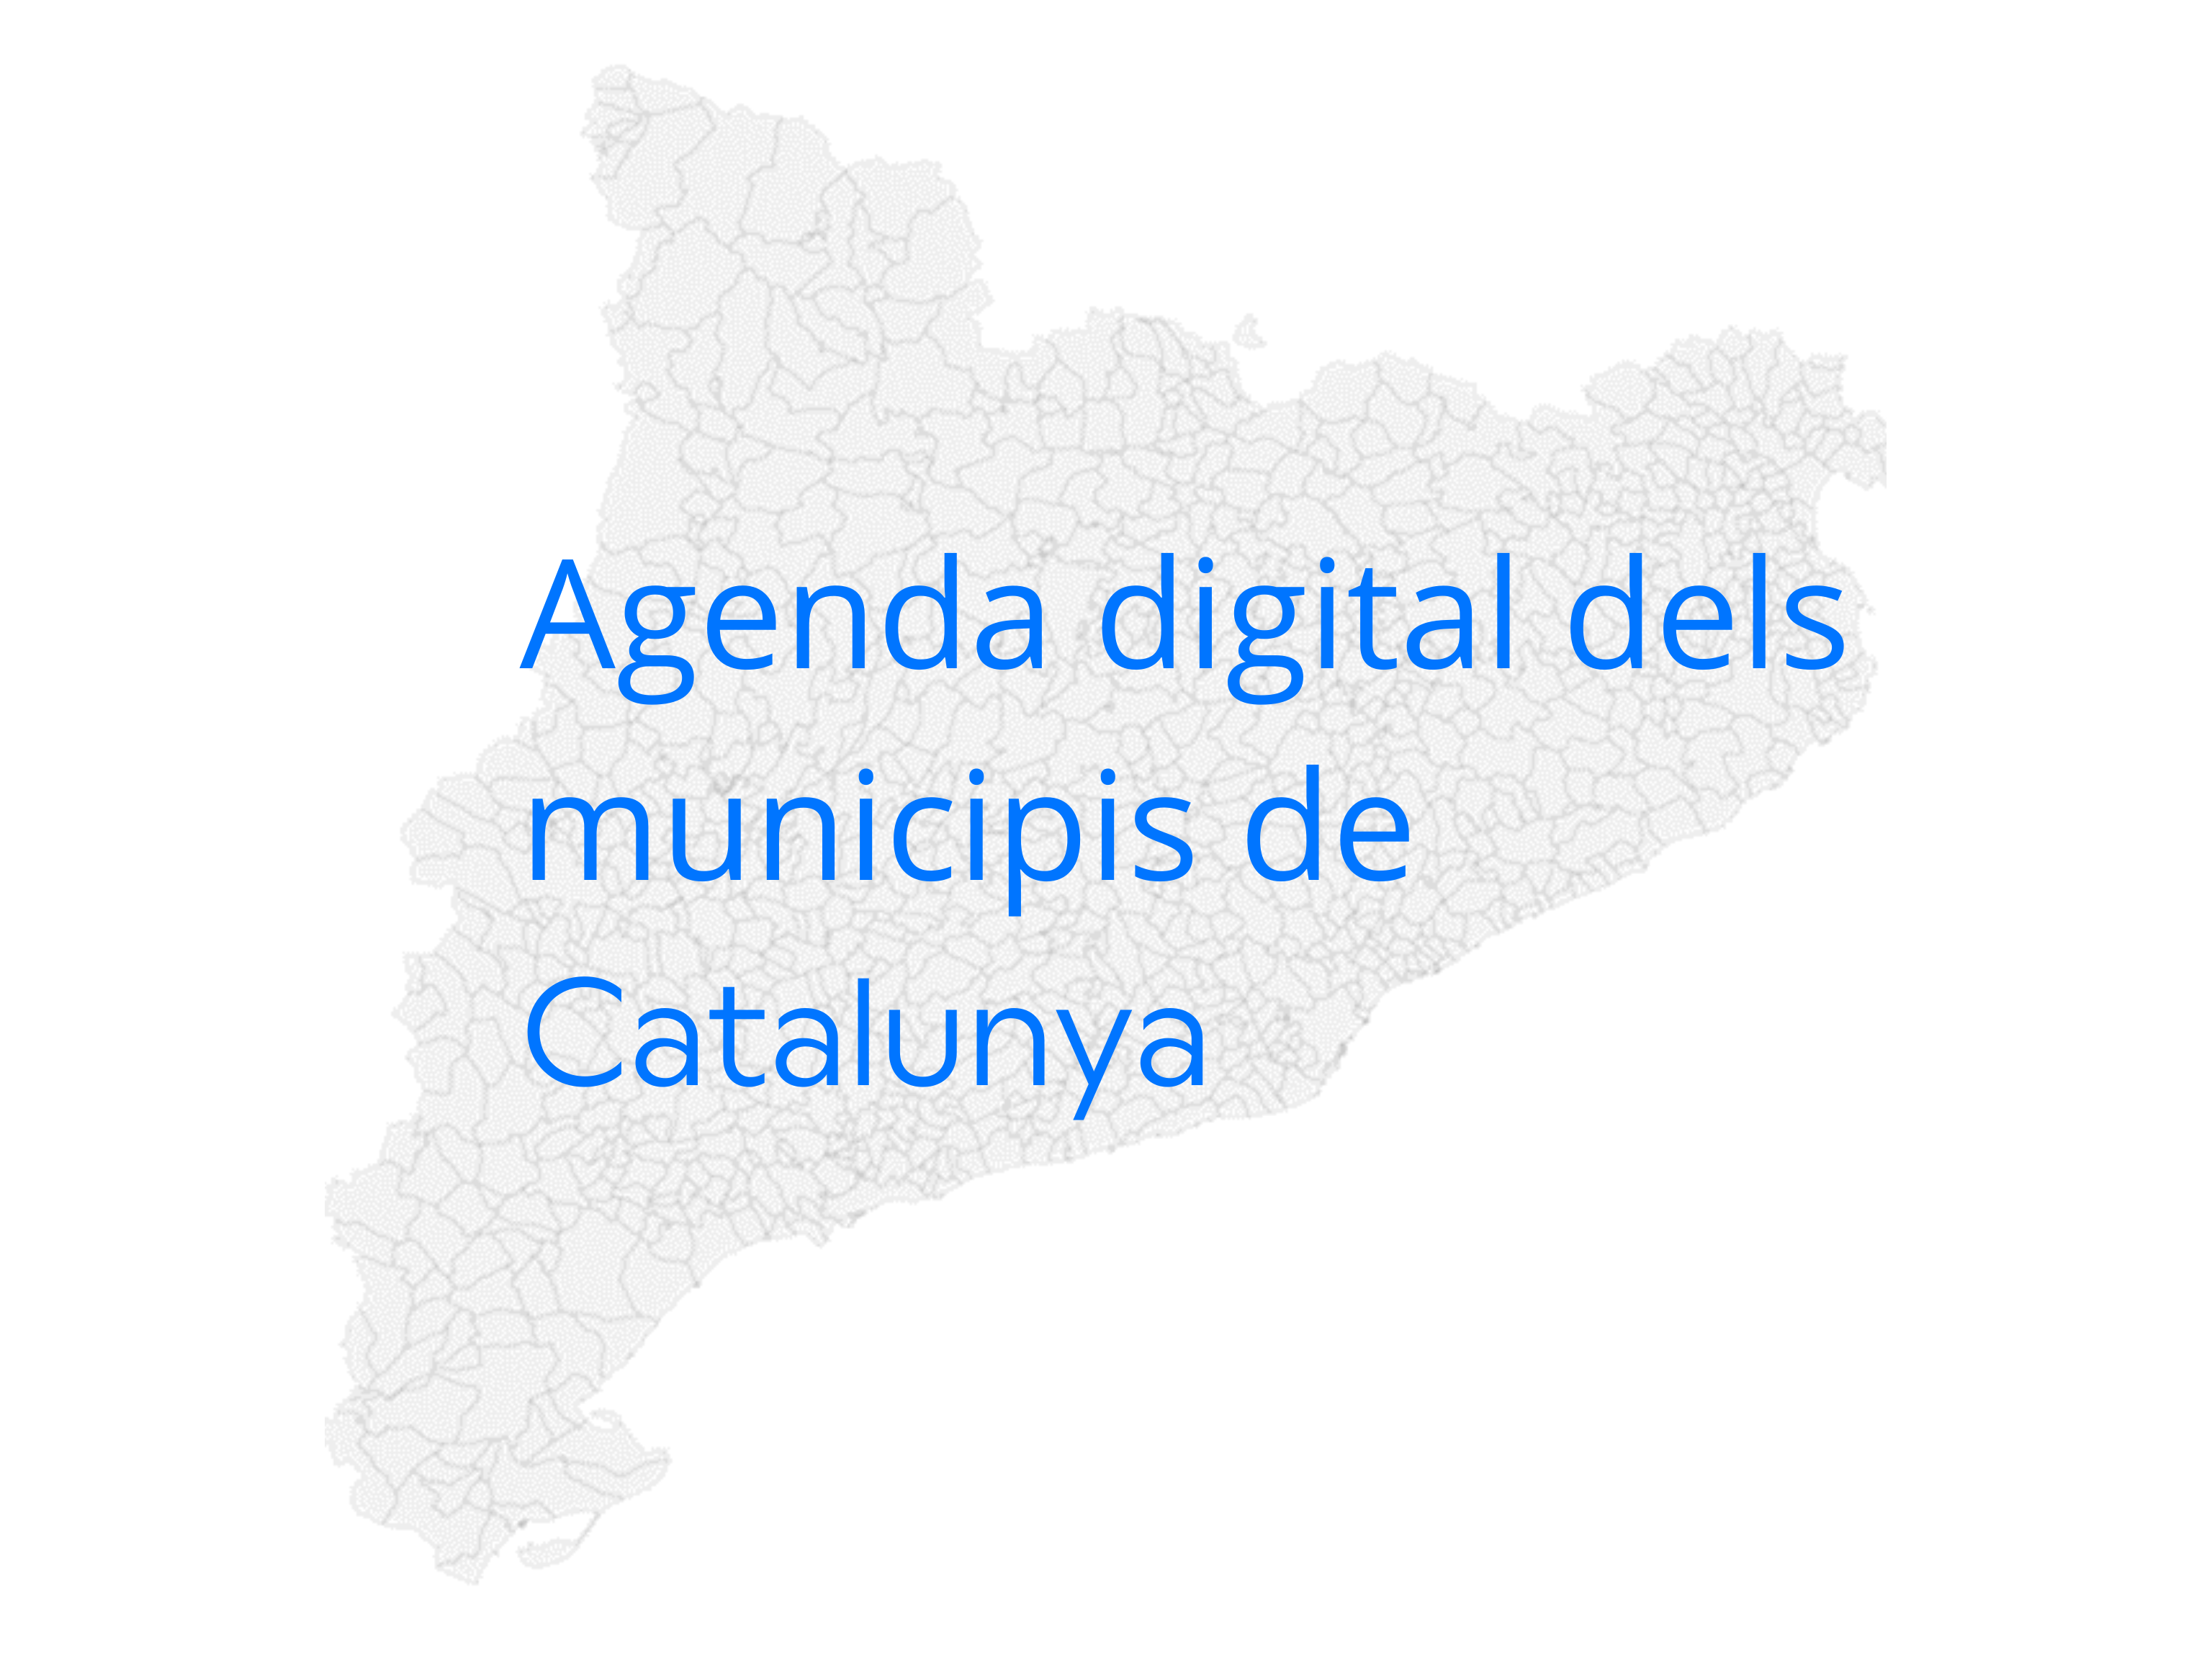 Agenda Digital dels municipis de Catalunya